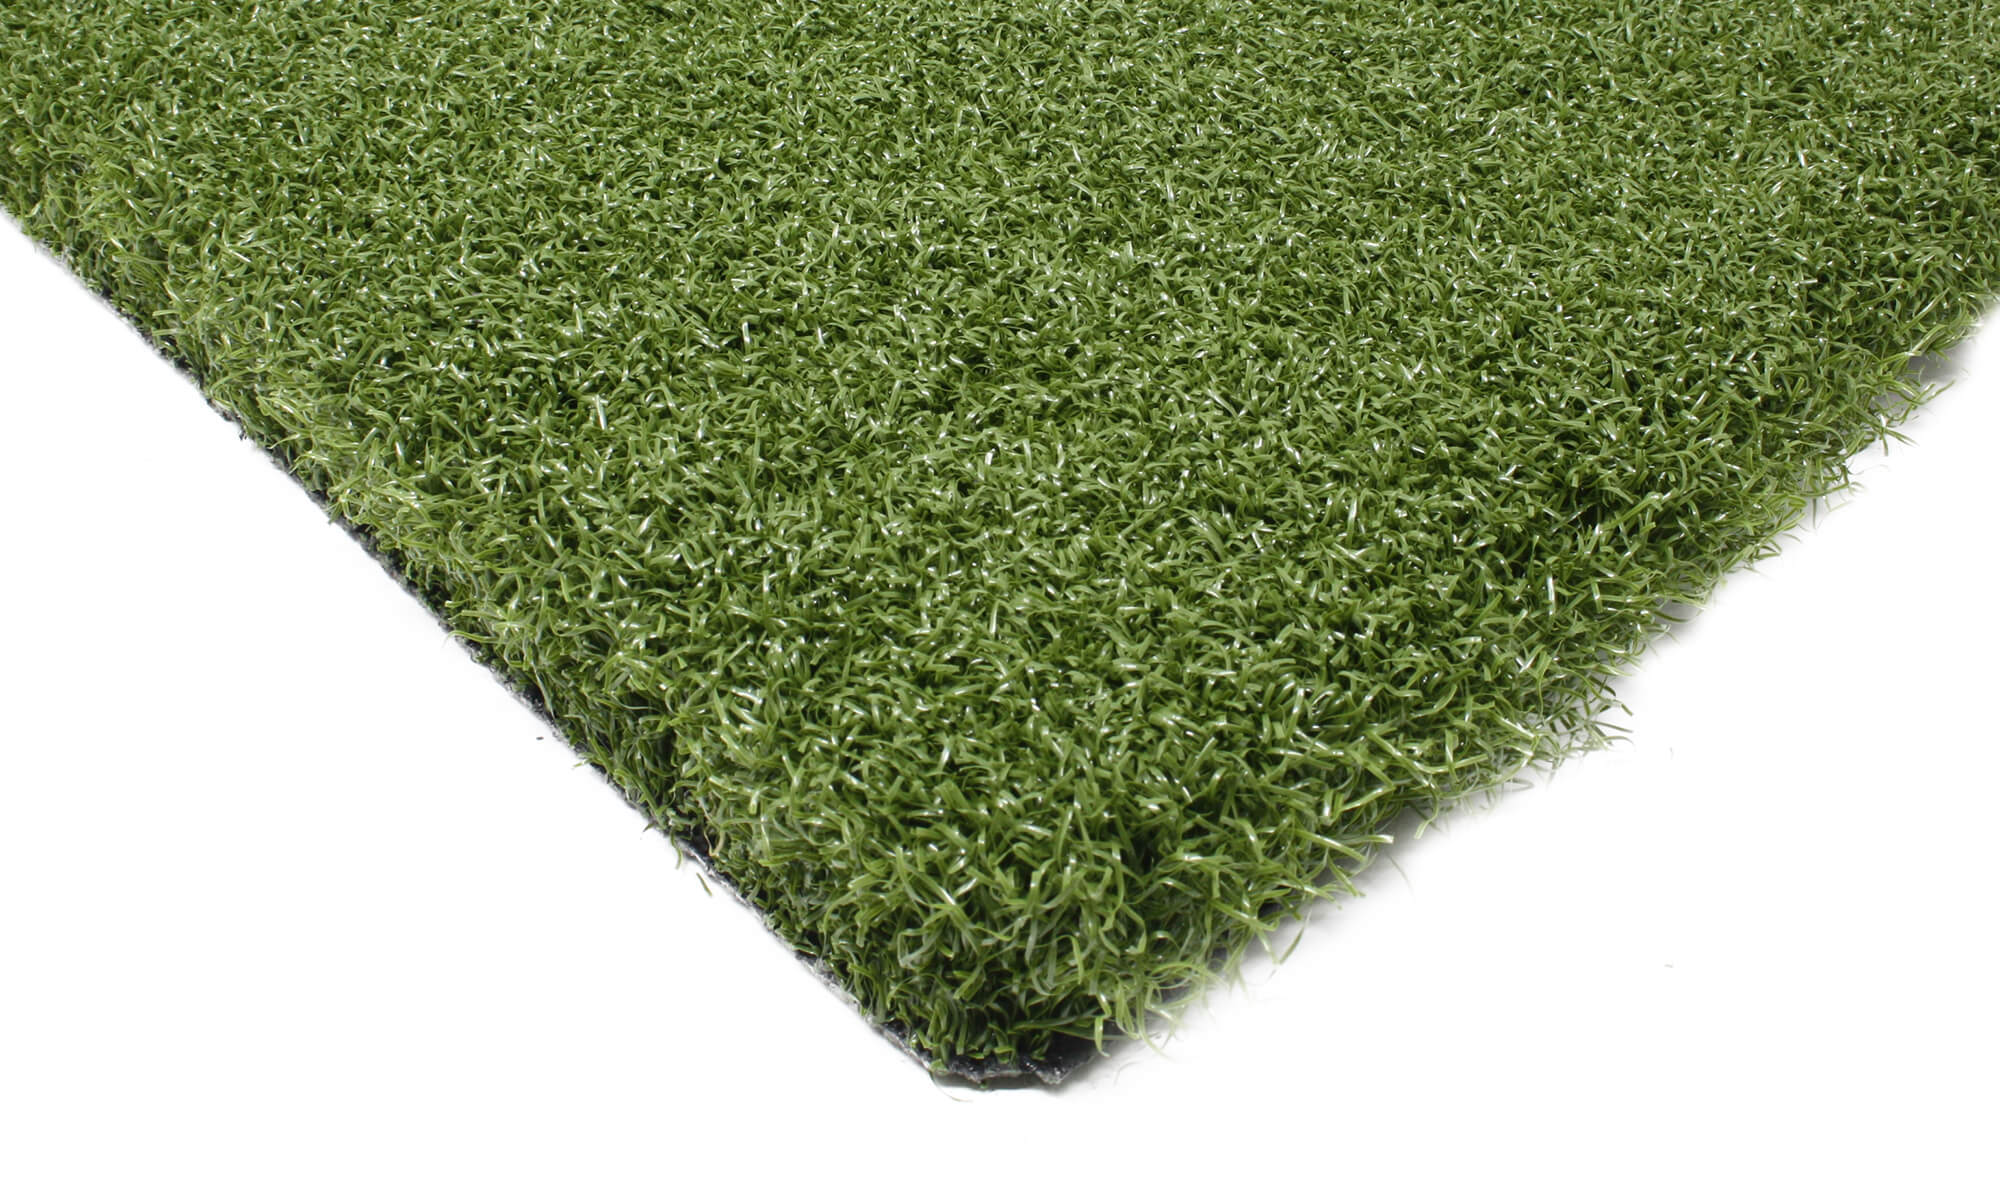 Tee Grass